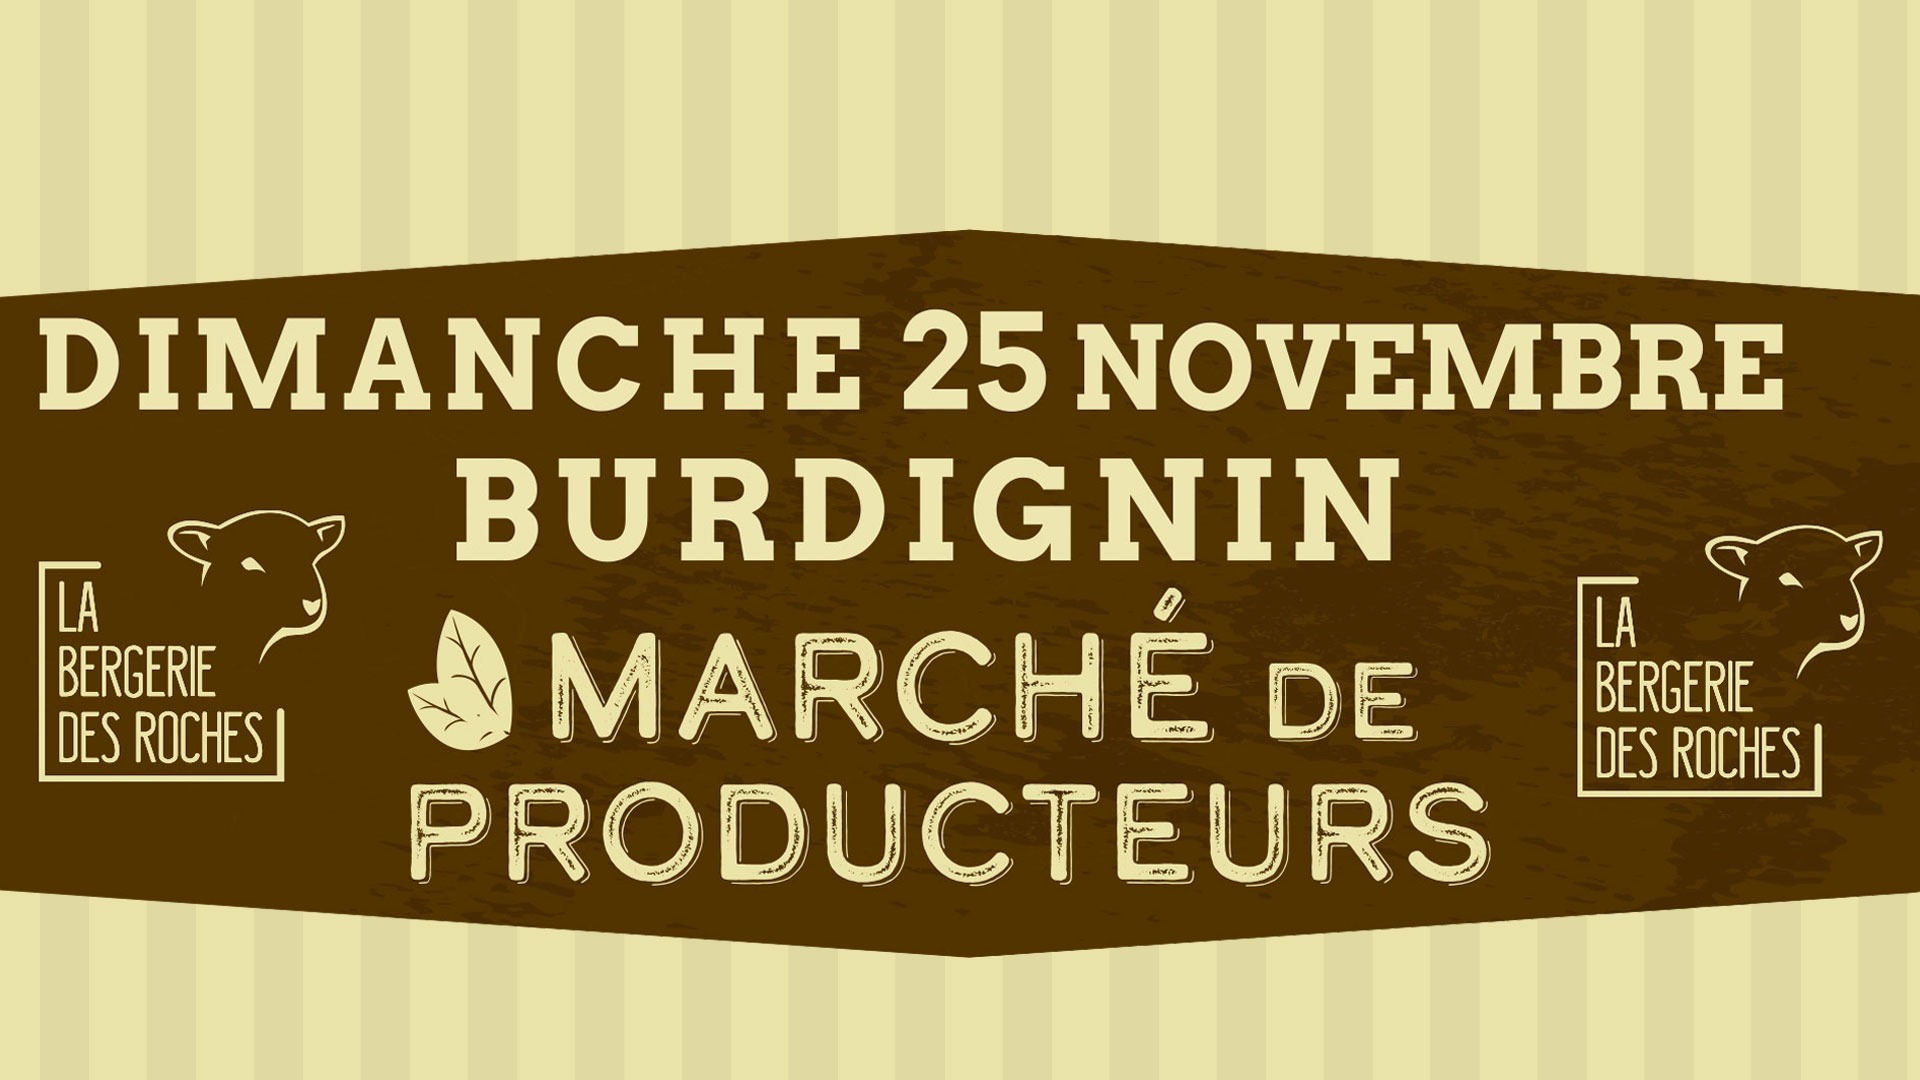 Dimanche 25 Novembre 2018 – Marché de producteurs à la Bergerie